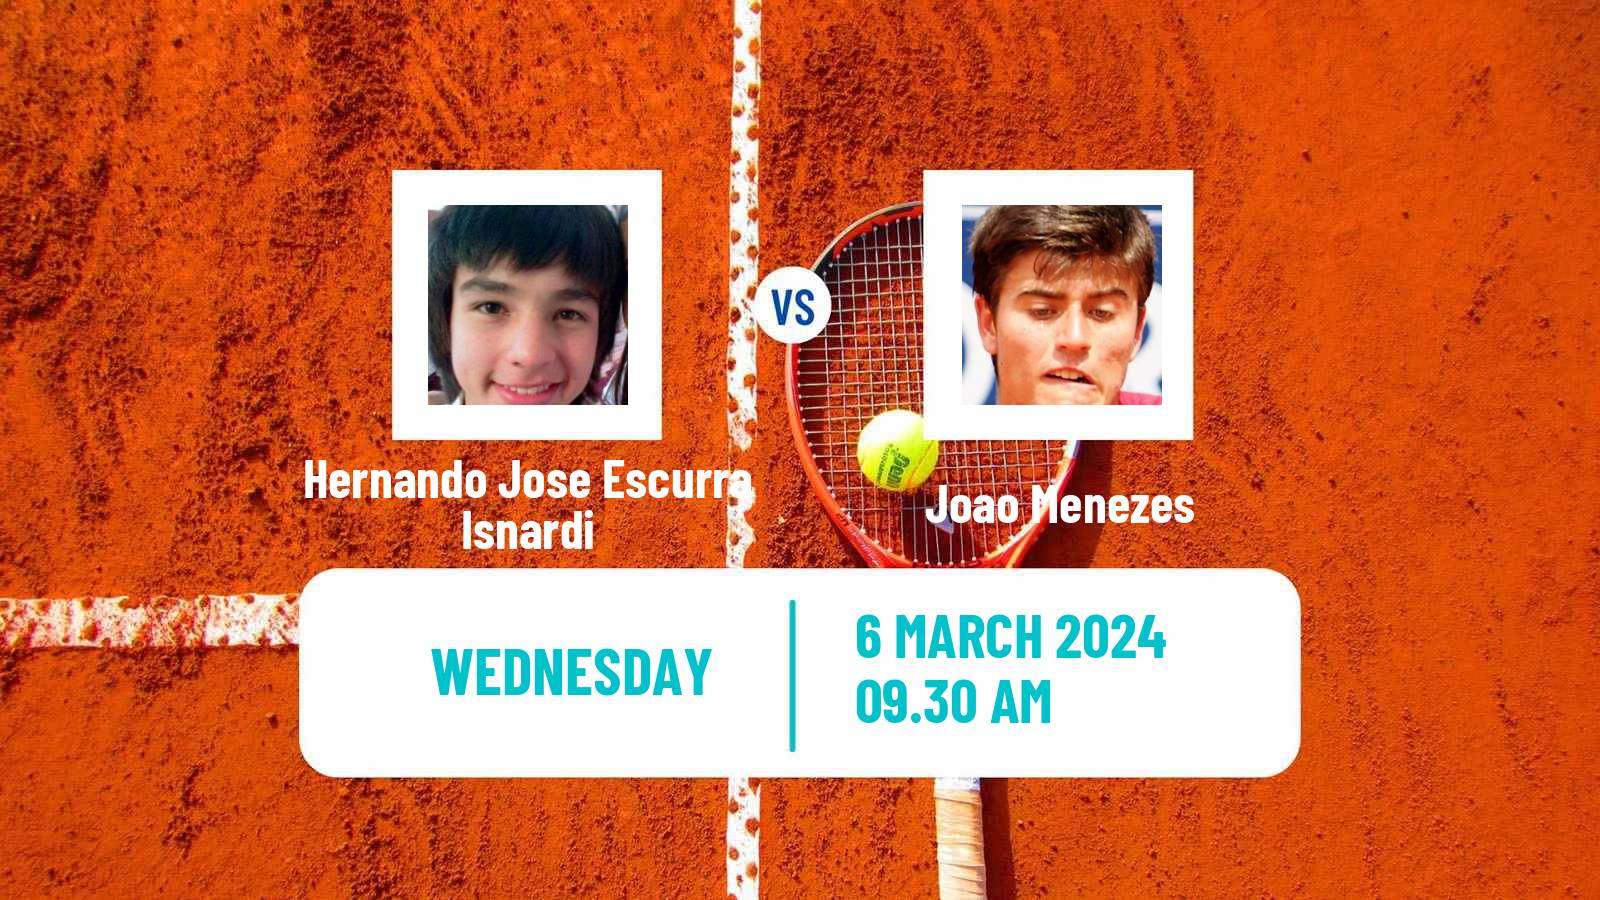 Tennis ITF M25 Recife Men Hernando Jose Escurra Isnardi - Joao Menezes